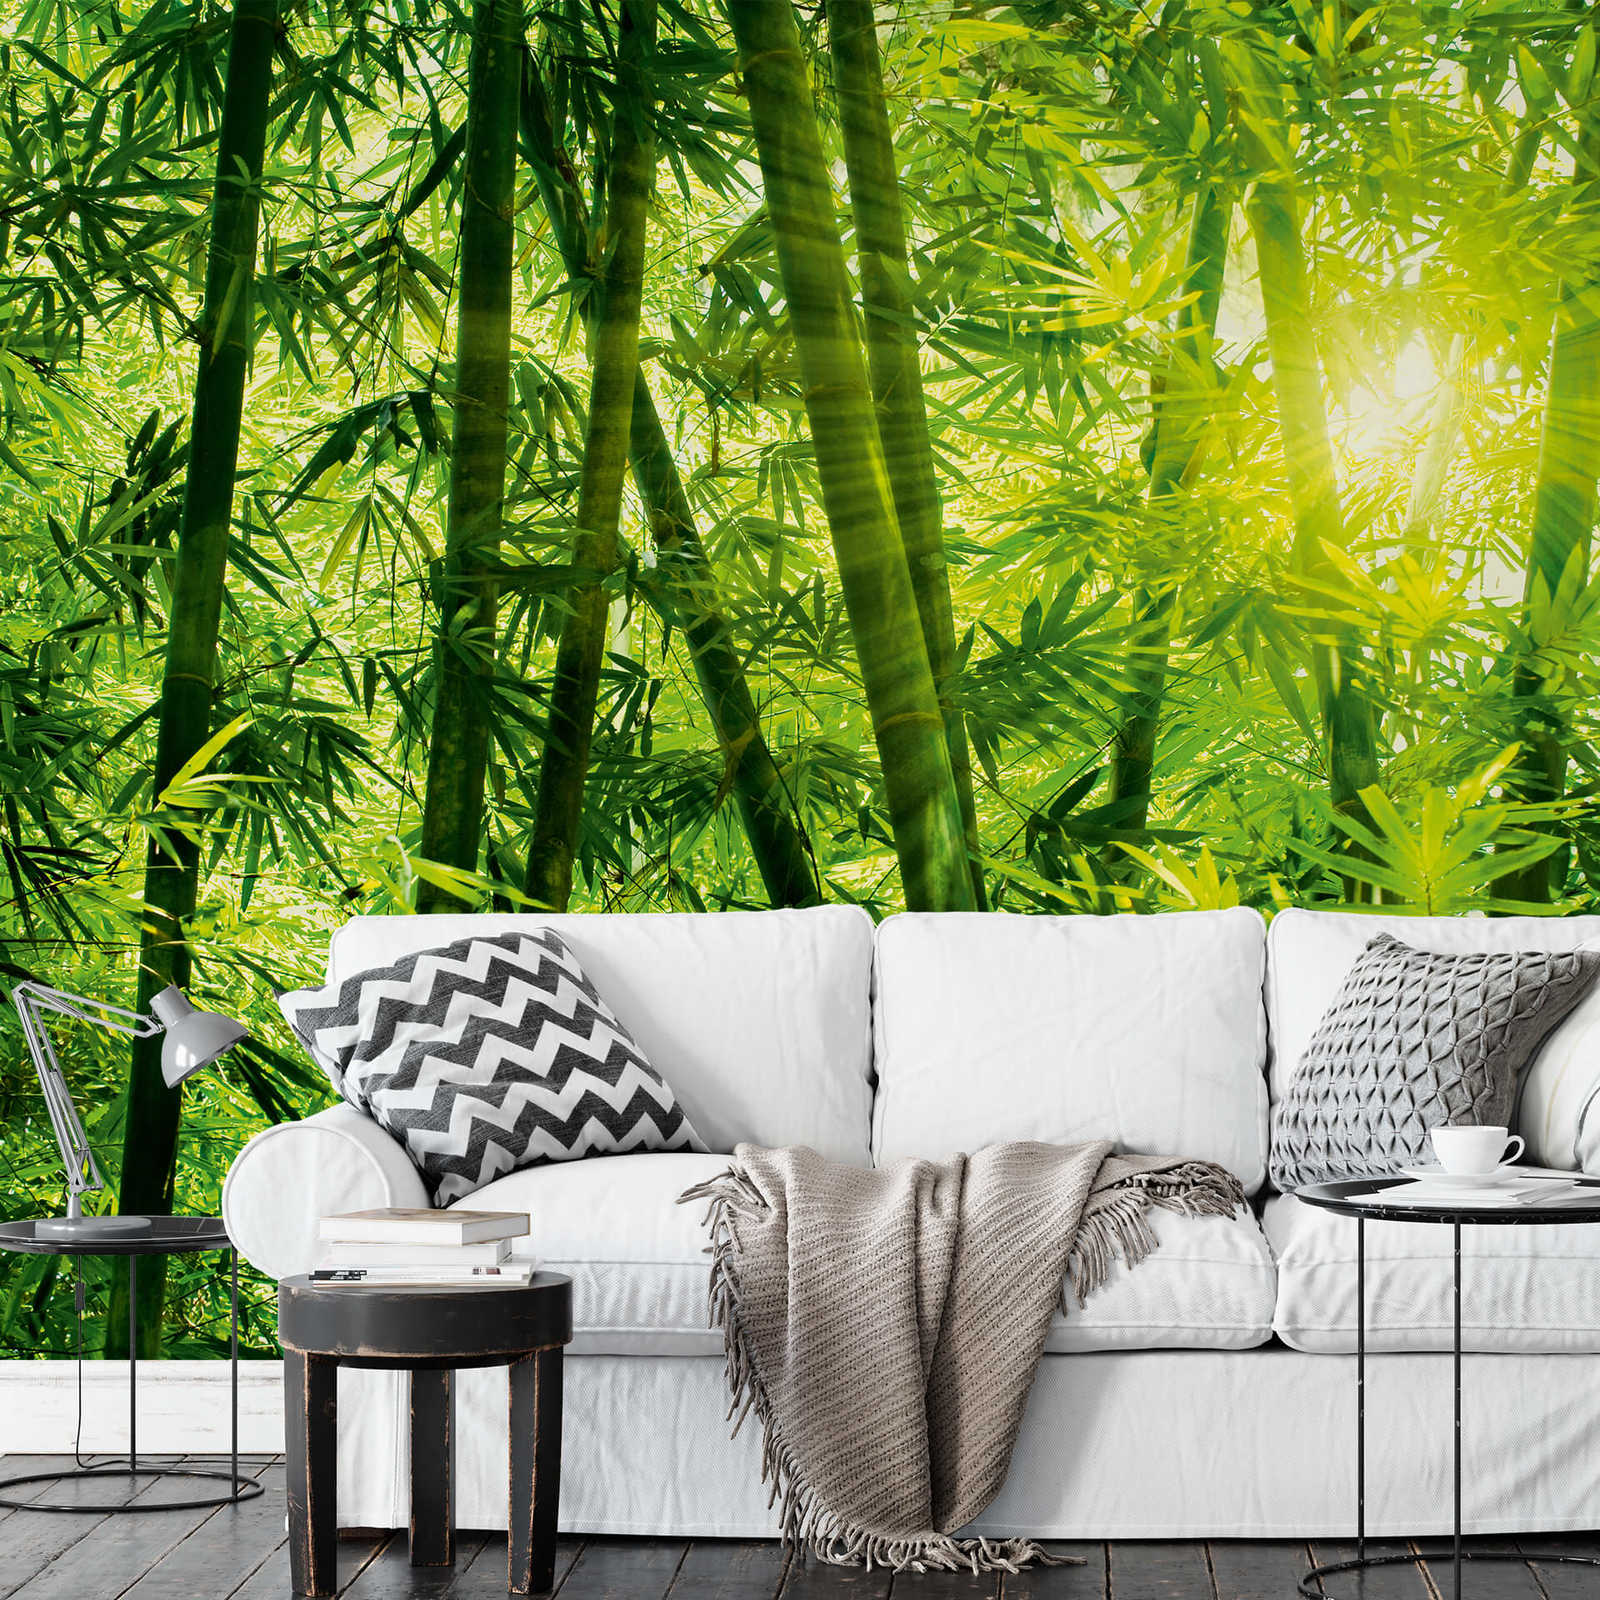             Papier peint panoramique Forêt de bambous au soleil
        